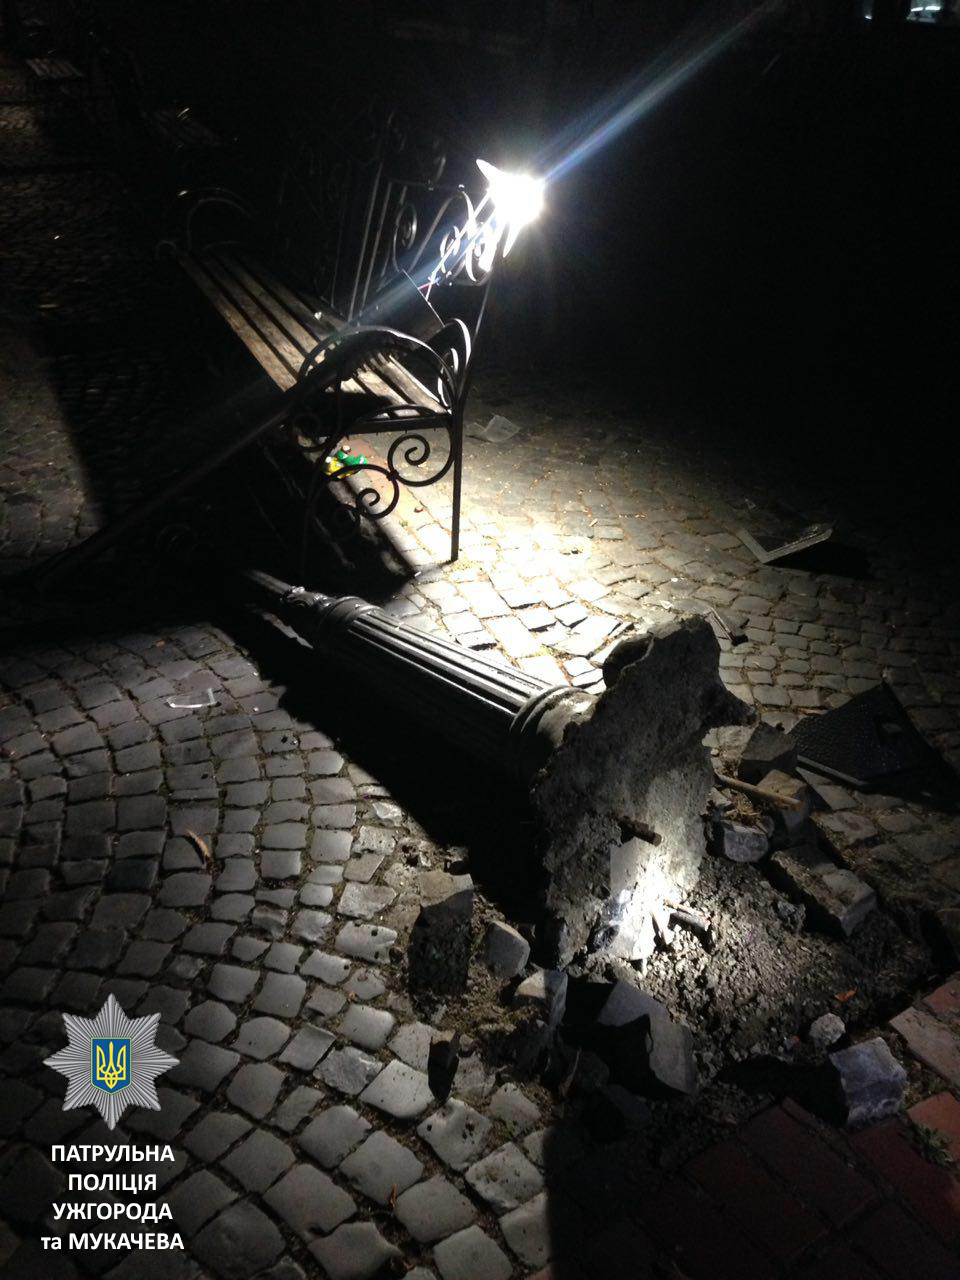 1-го октября около 10 часов вечера экипаж мукачевских патрульных получил сообщение о повреждении осветительного фонаря на улице Пушкина.